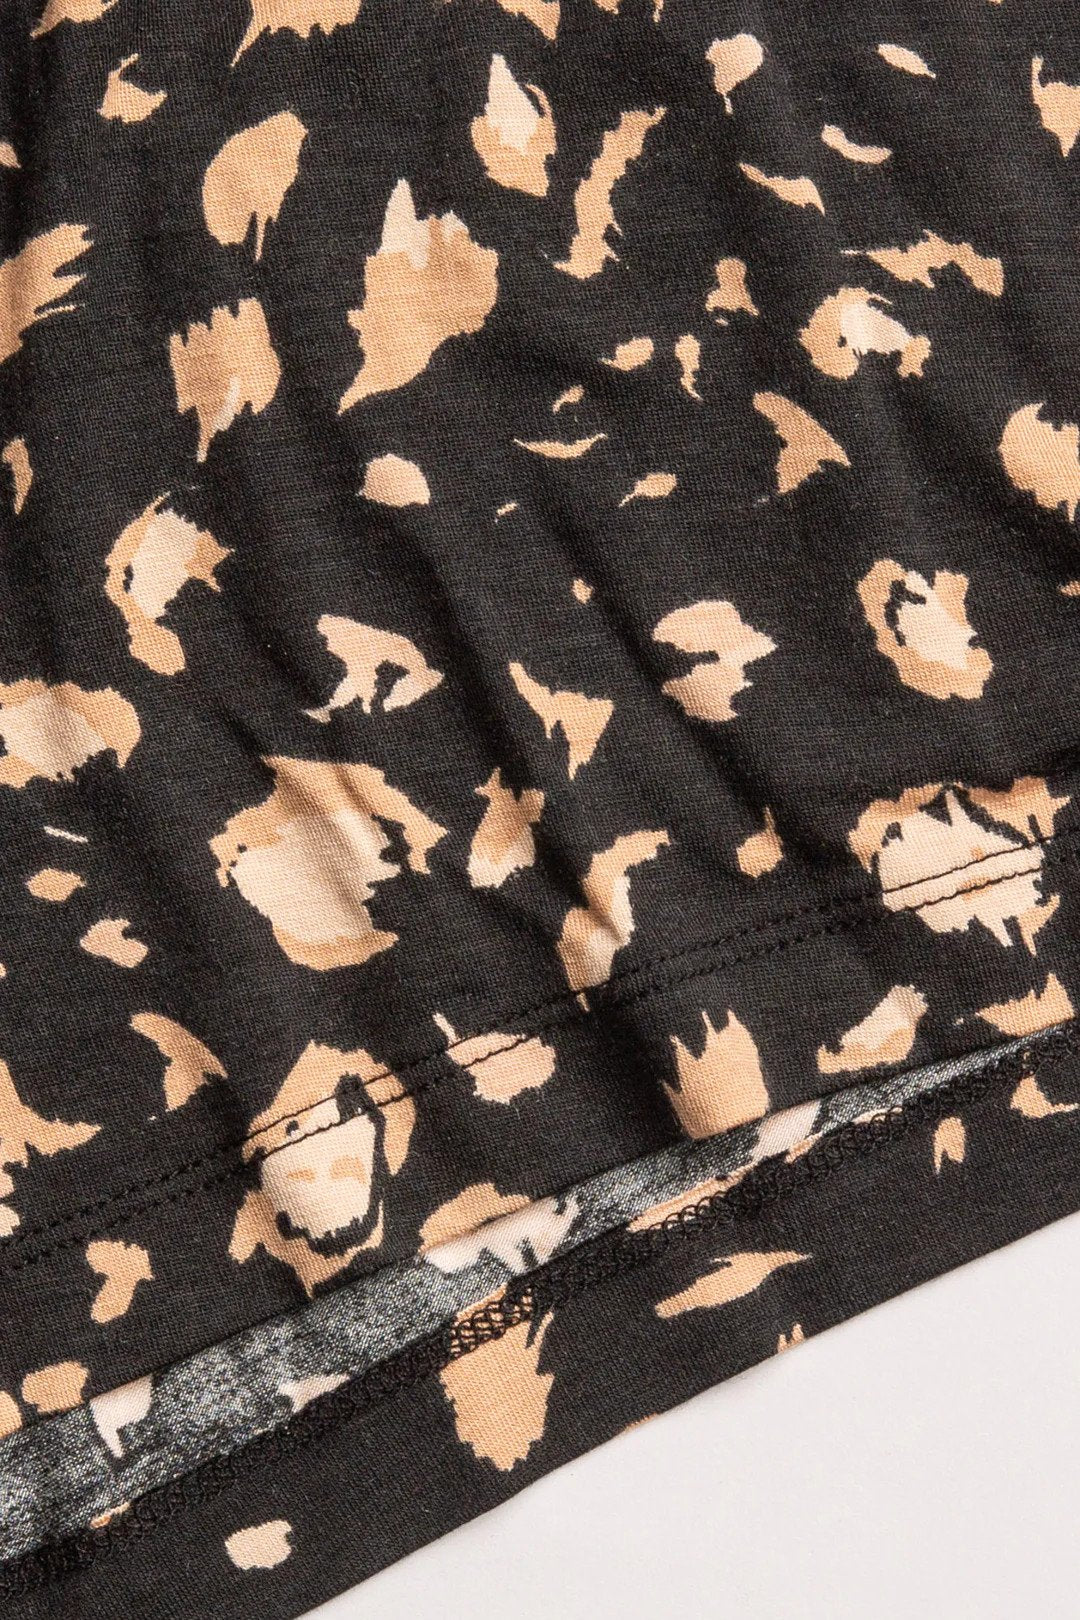 Black Cheetah PJ Set Hem Detail.